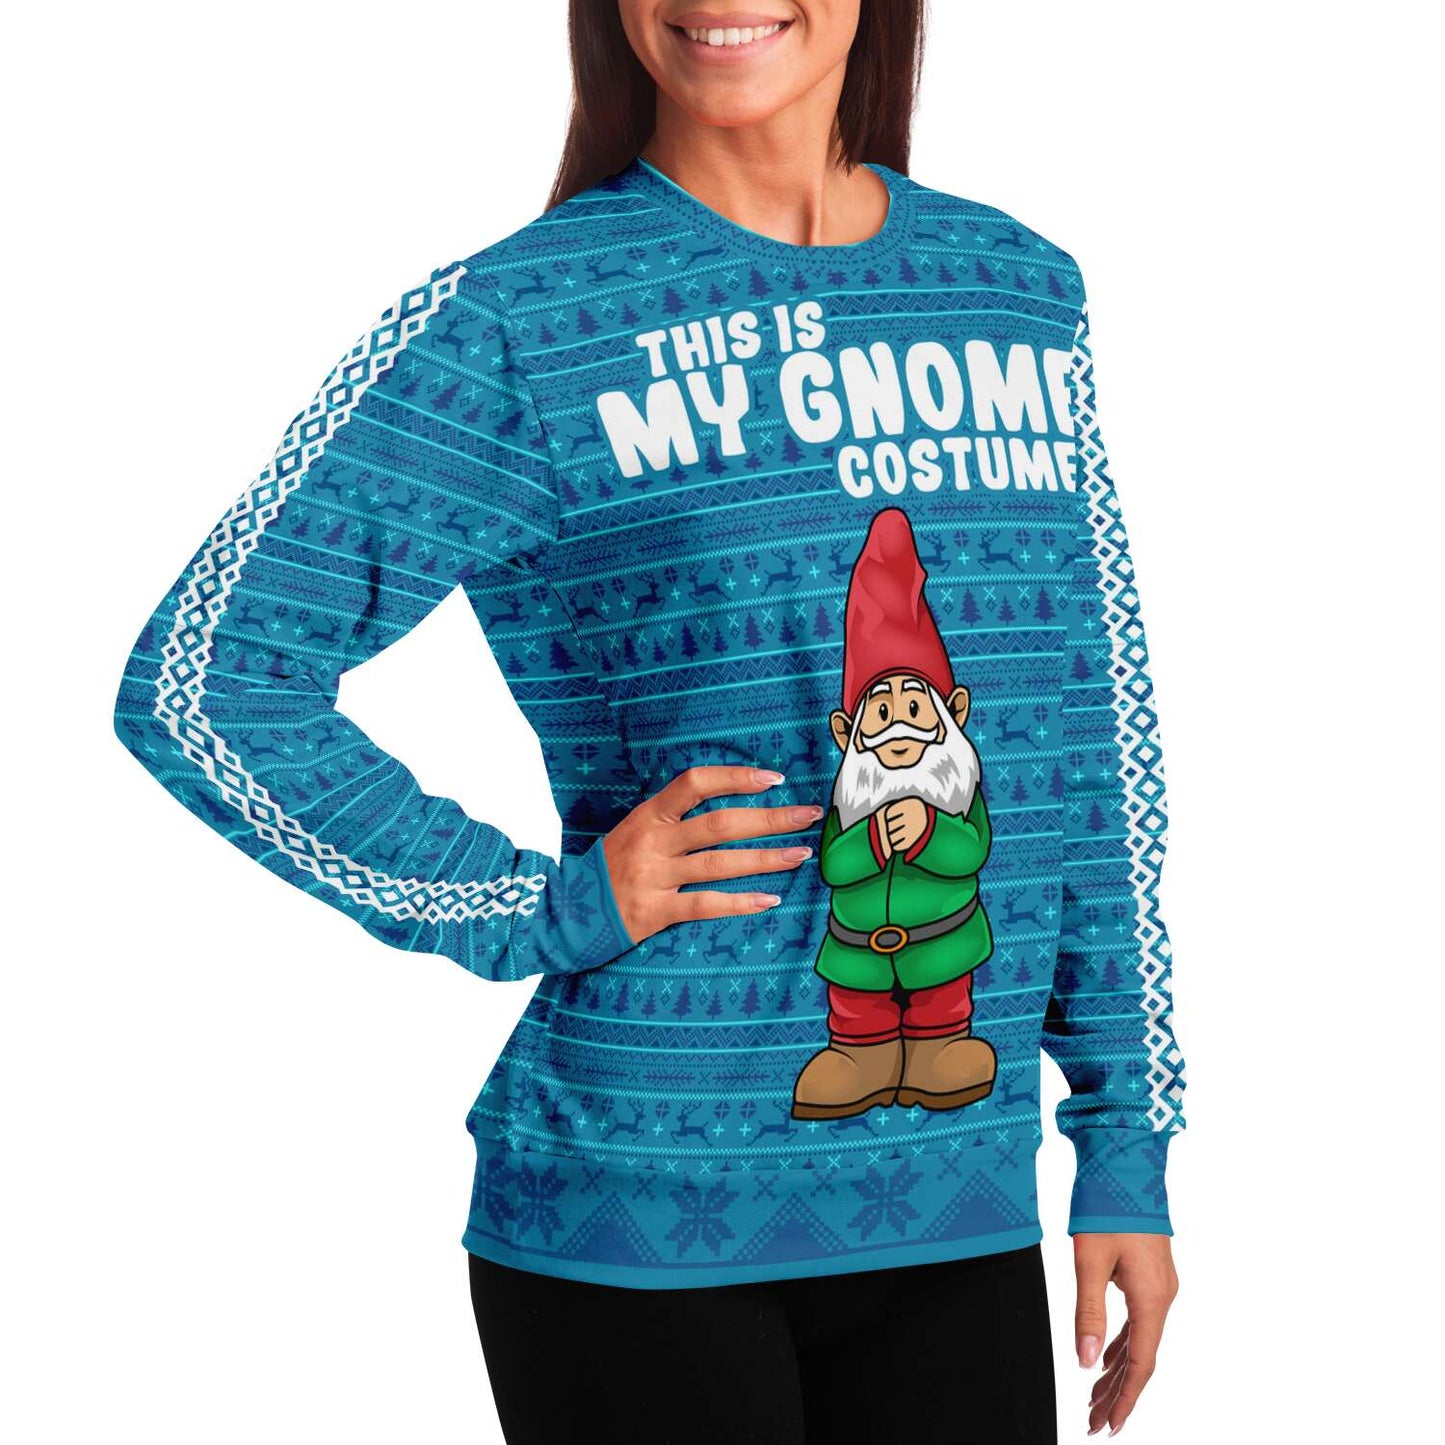 MZKS Chrobry Glogow Custom Ugly Christmas Sweater - MiuShop - Tagotee